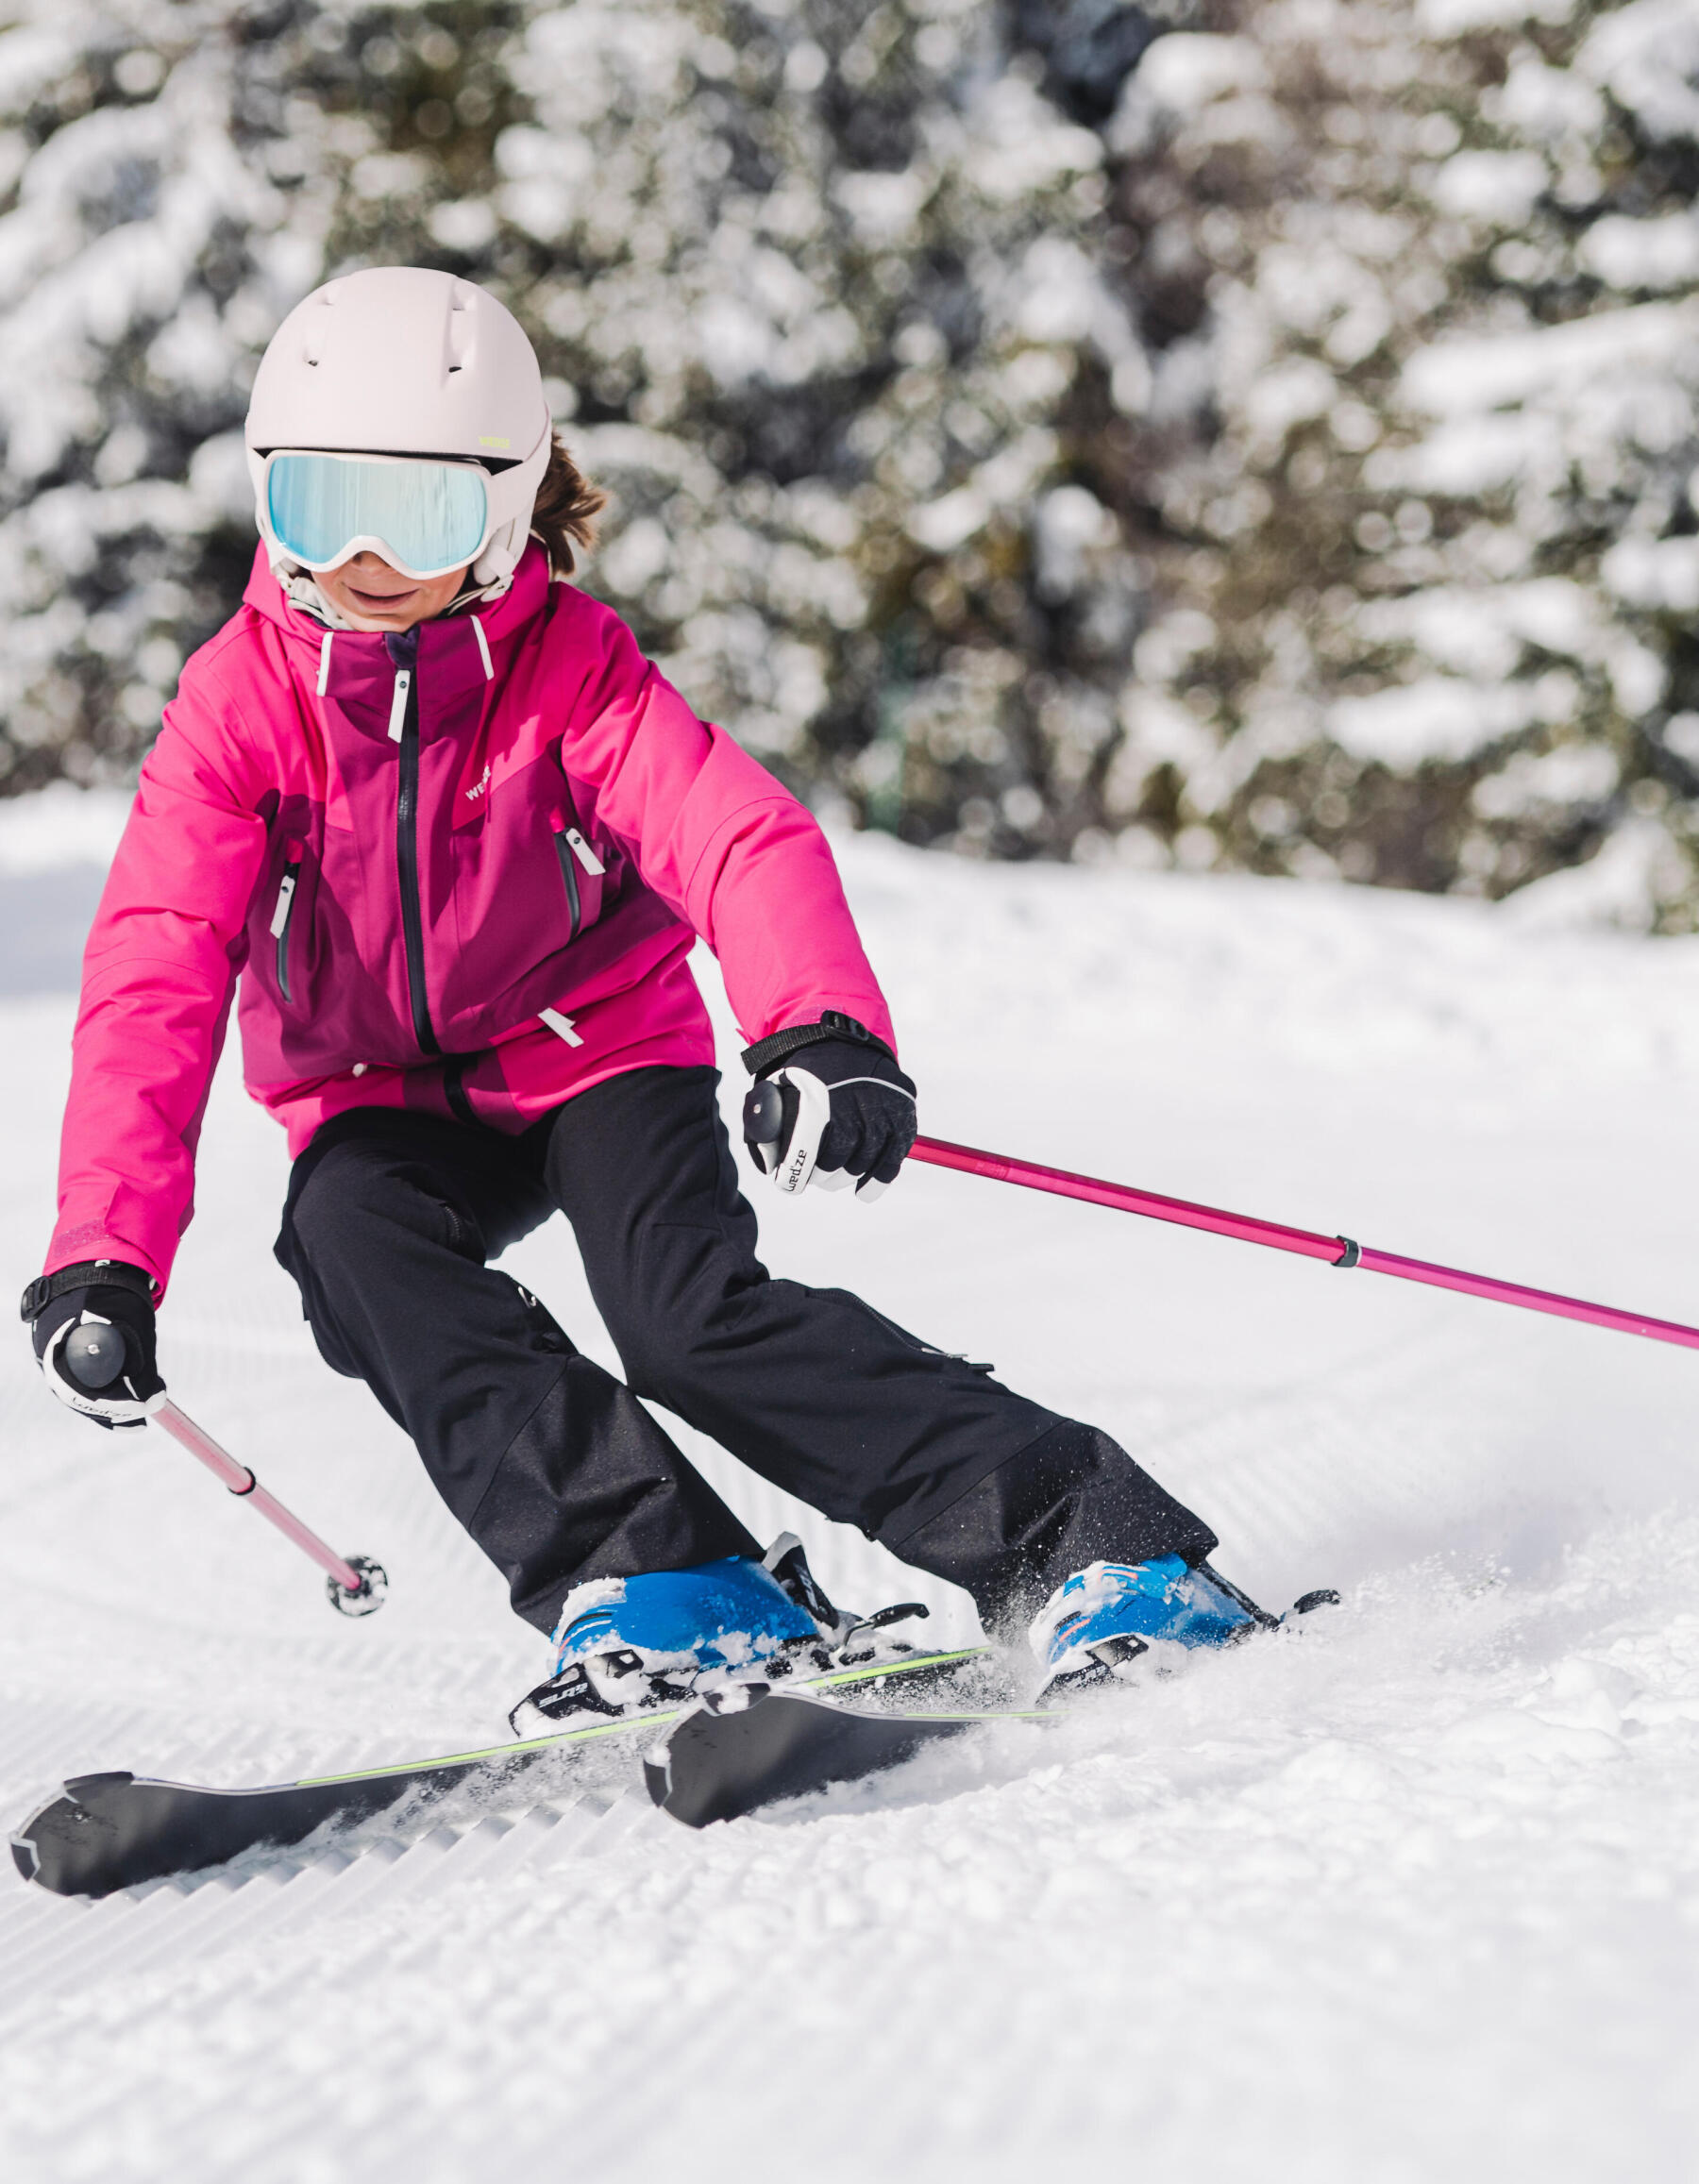 jeune fille en ski